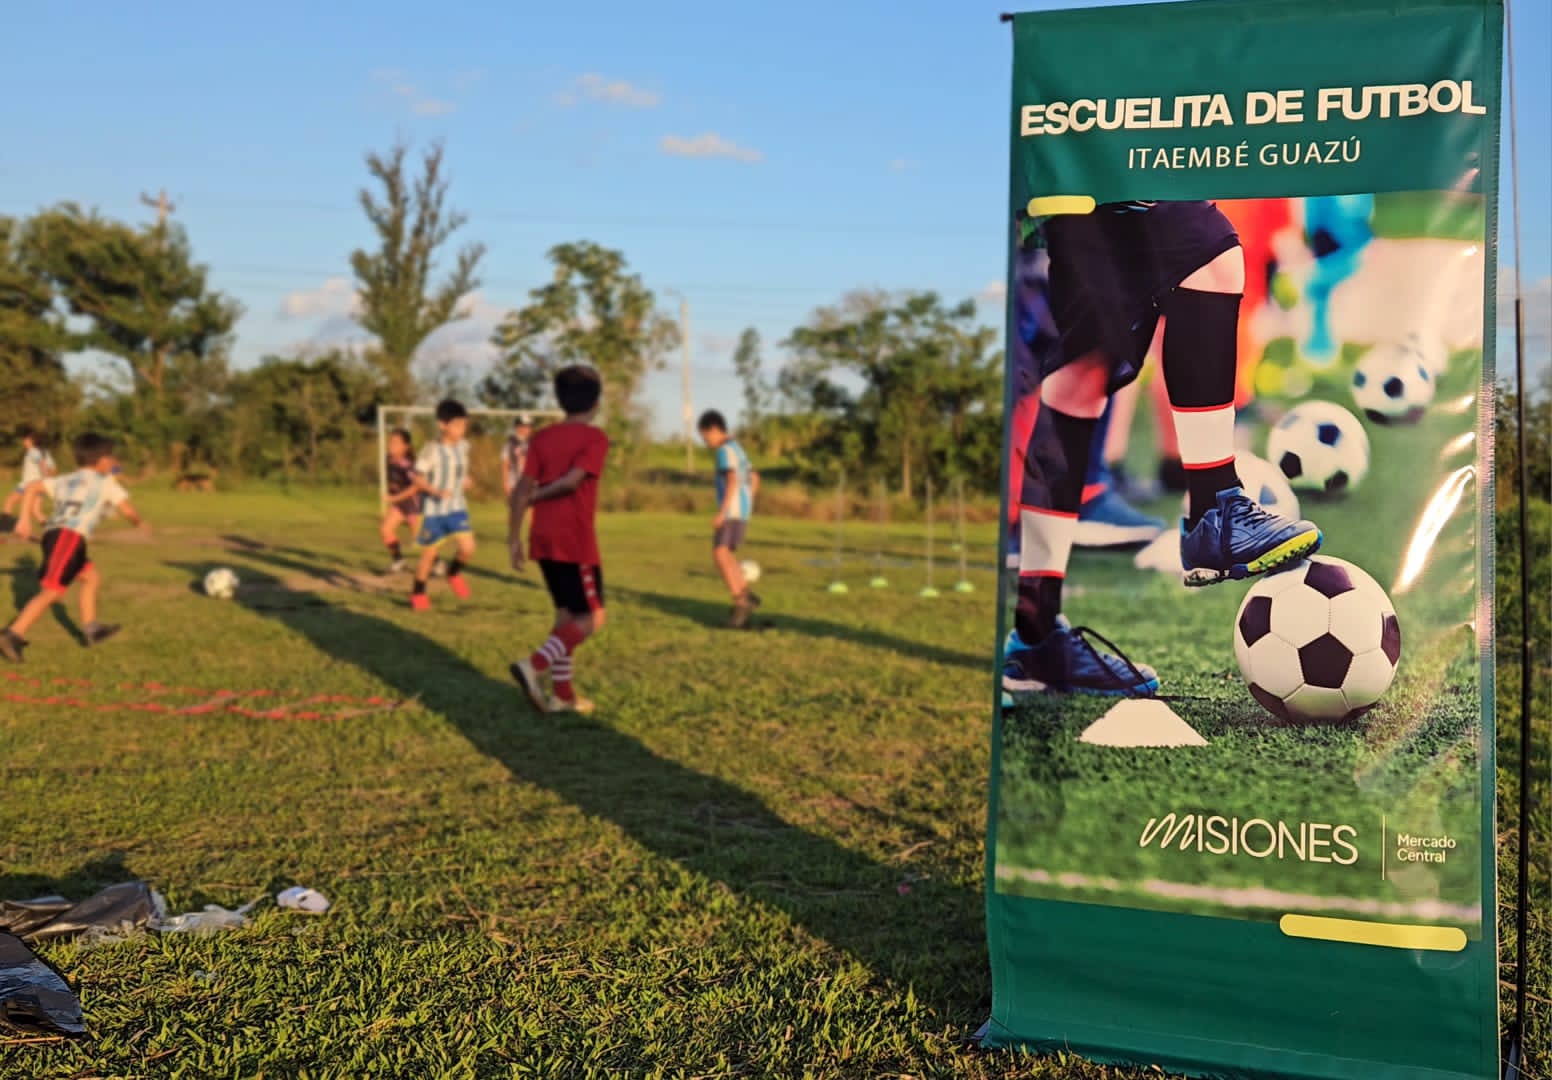 Comunidad de Itaembé Guazú destaca la puesta en funcionamiento de la Escuelita de Fútbol del Mercado Central imagen-59